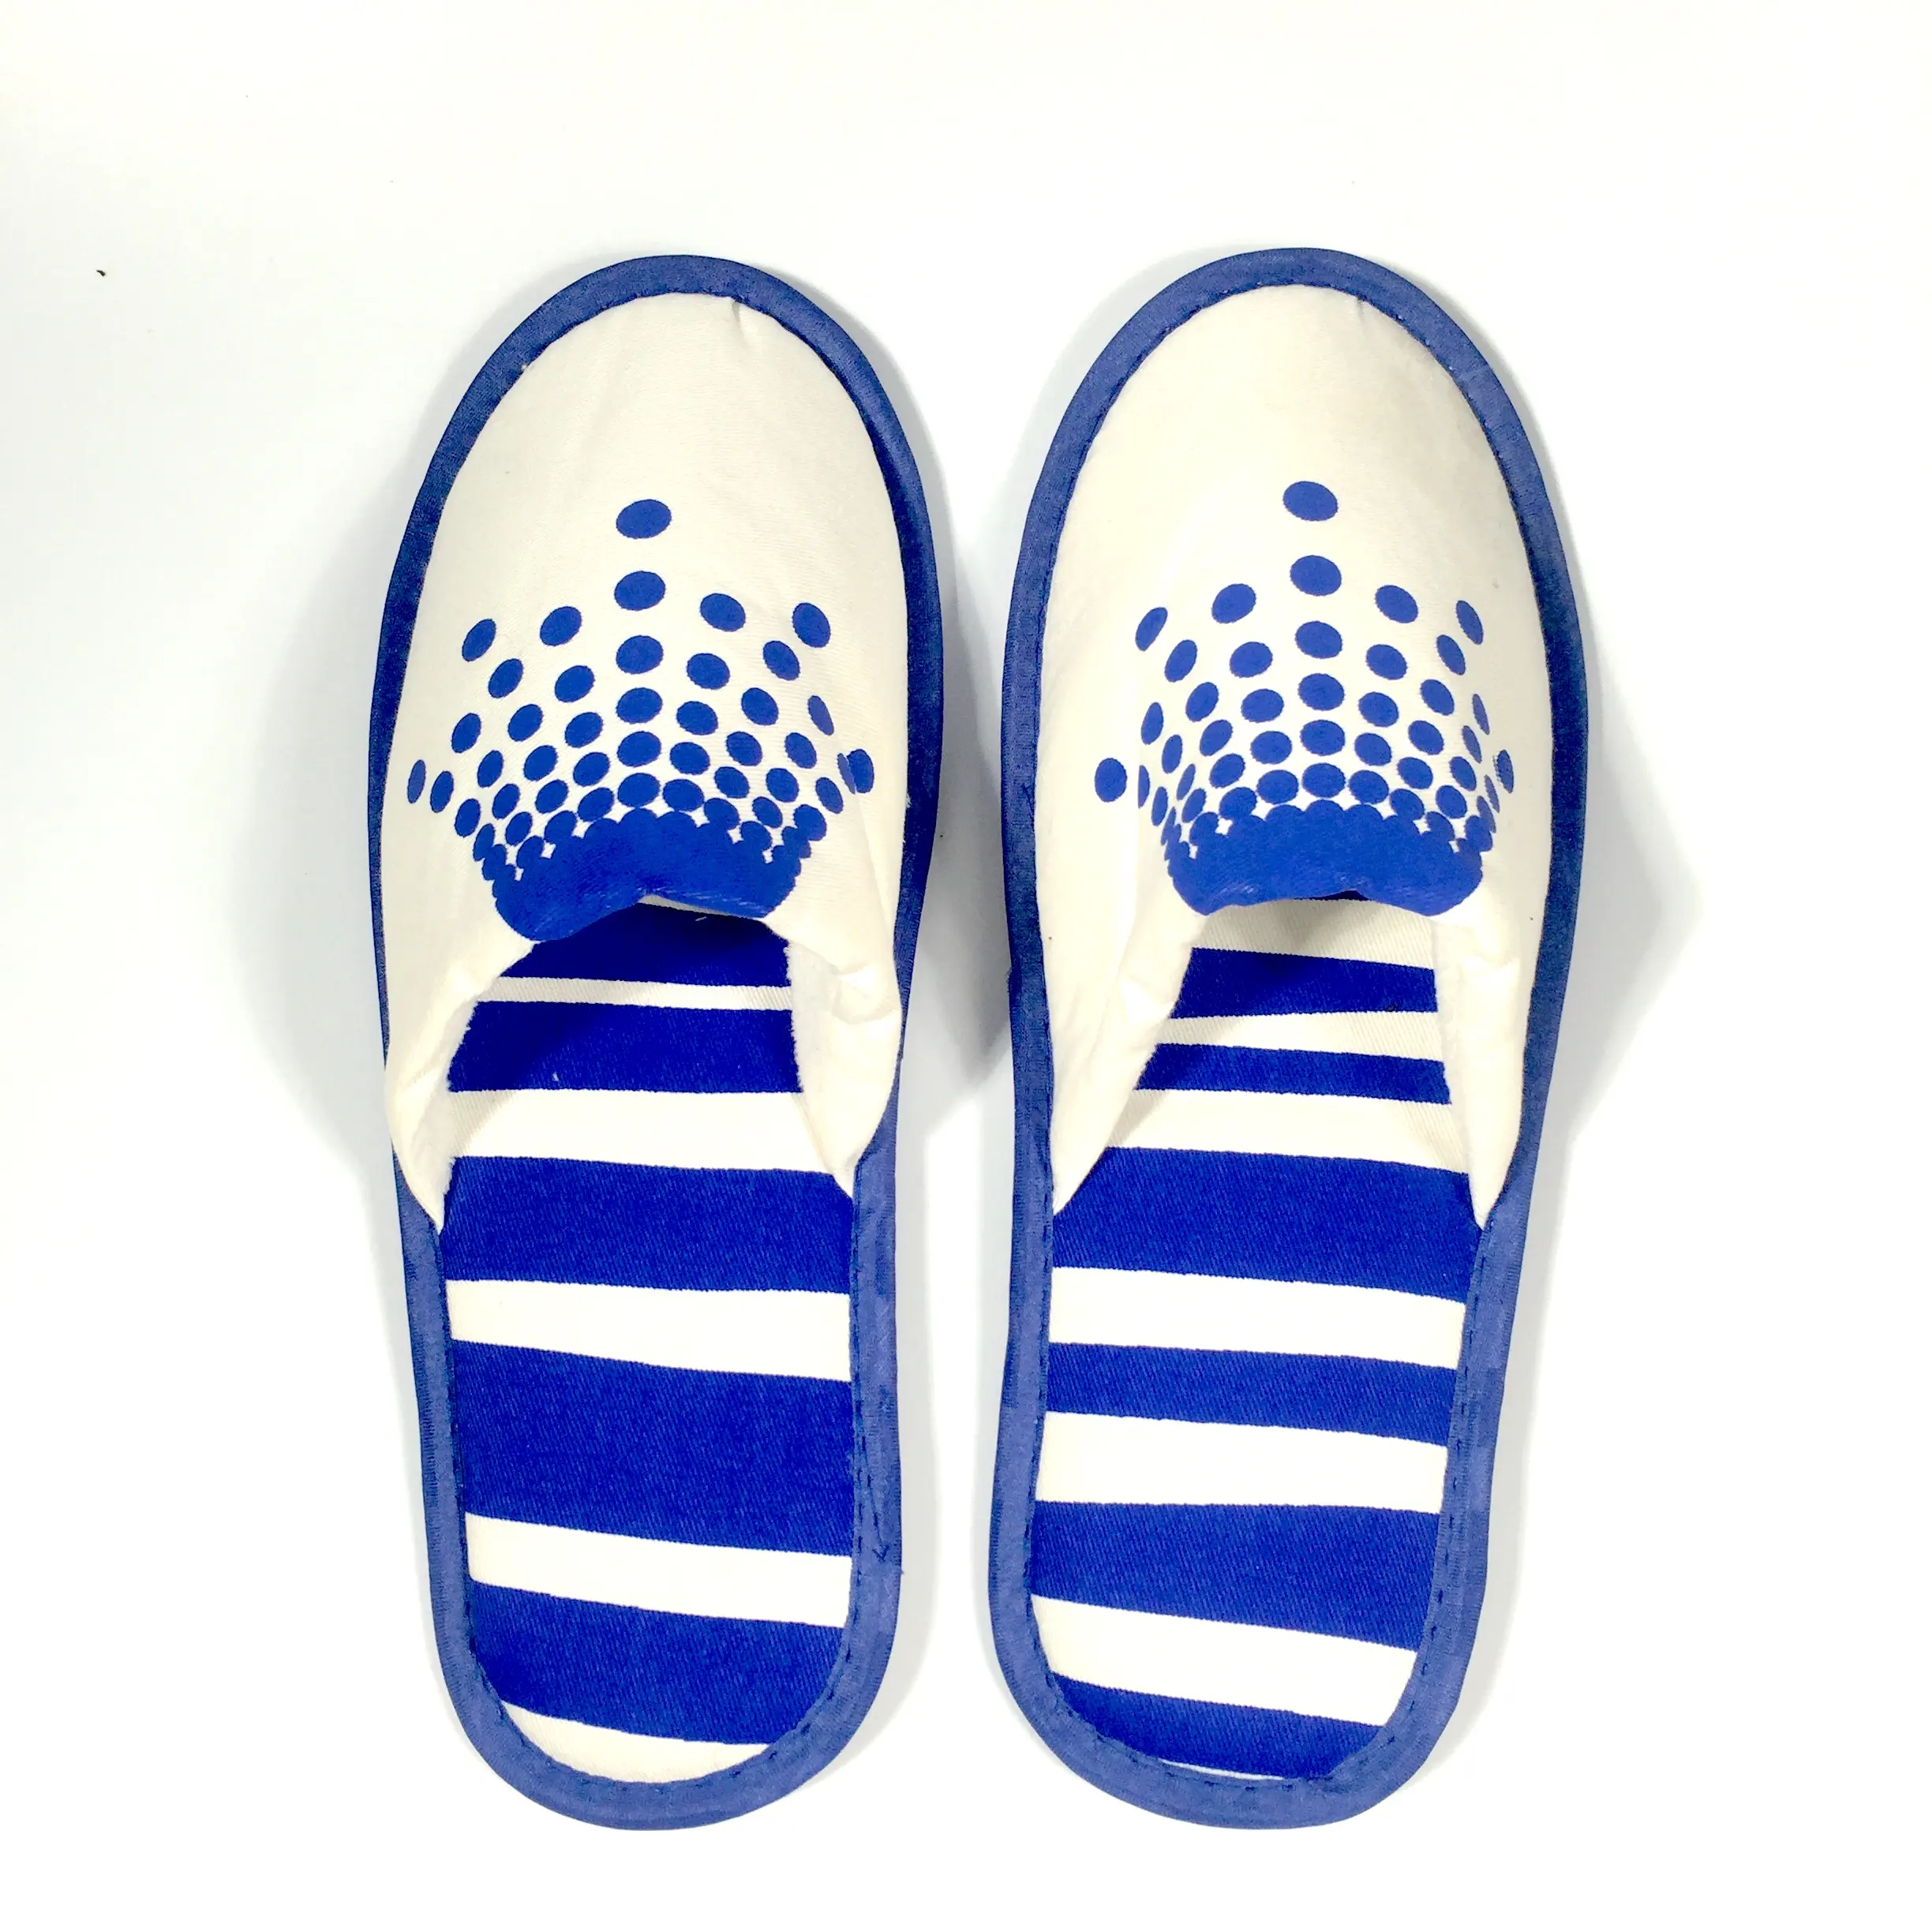 Promocional barato zapatillas de Hotel para las mujeres/hombres desechable reciclar cliente zapatillas/cerrado/OpenToe zapatillas de baño